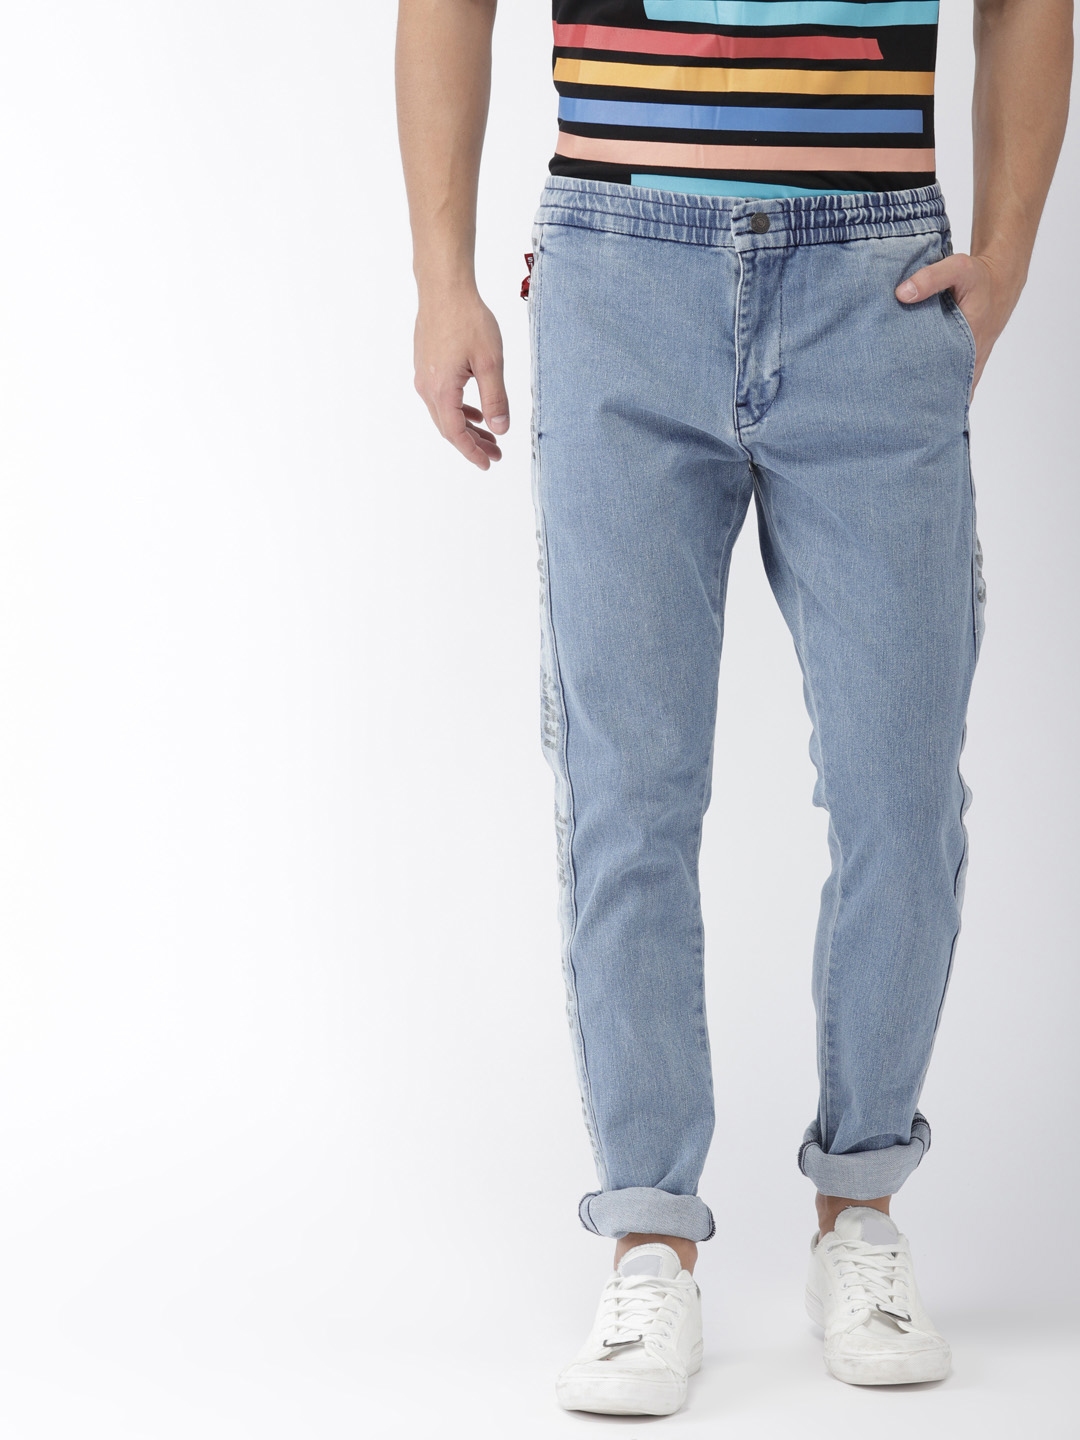 levis stretchable jeans